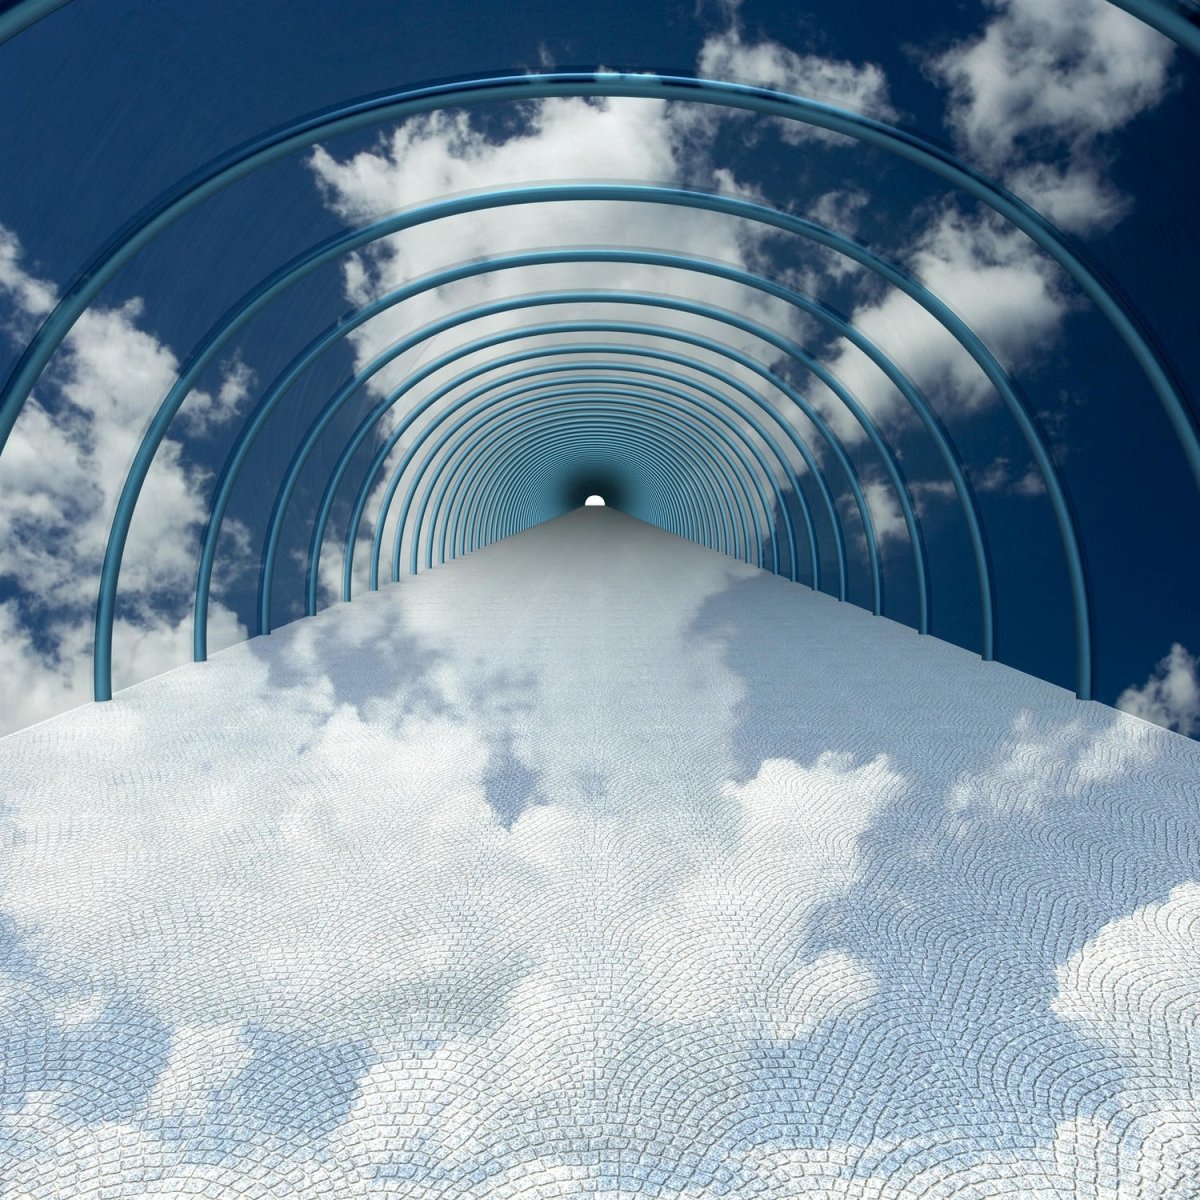 Beistelltisch Tunnel in Wolken M0784 entdecken - Bild 2